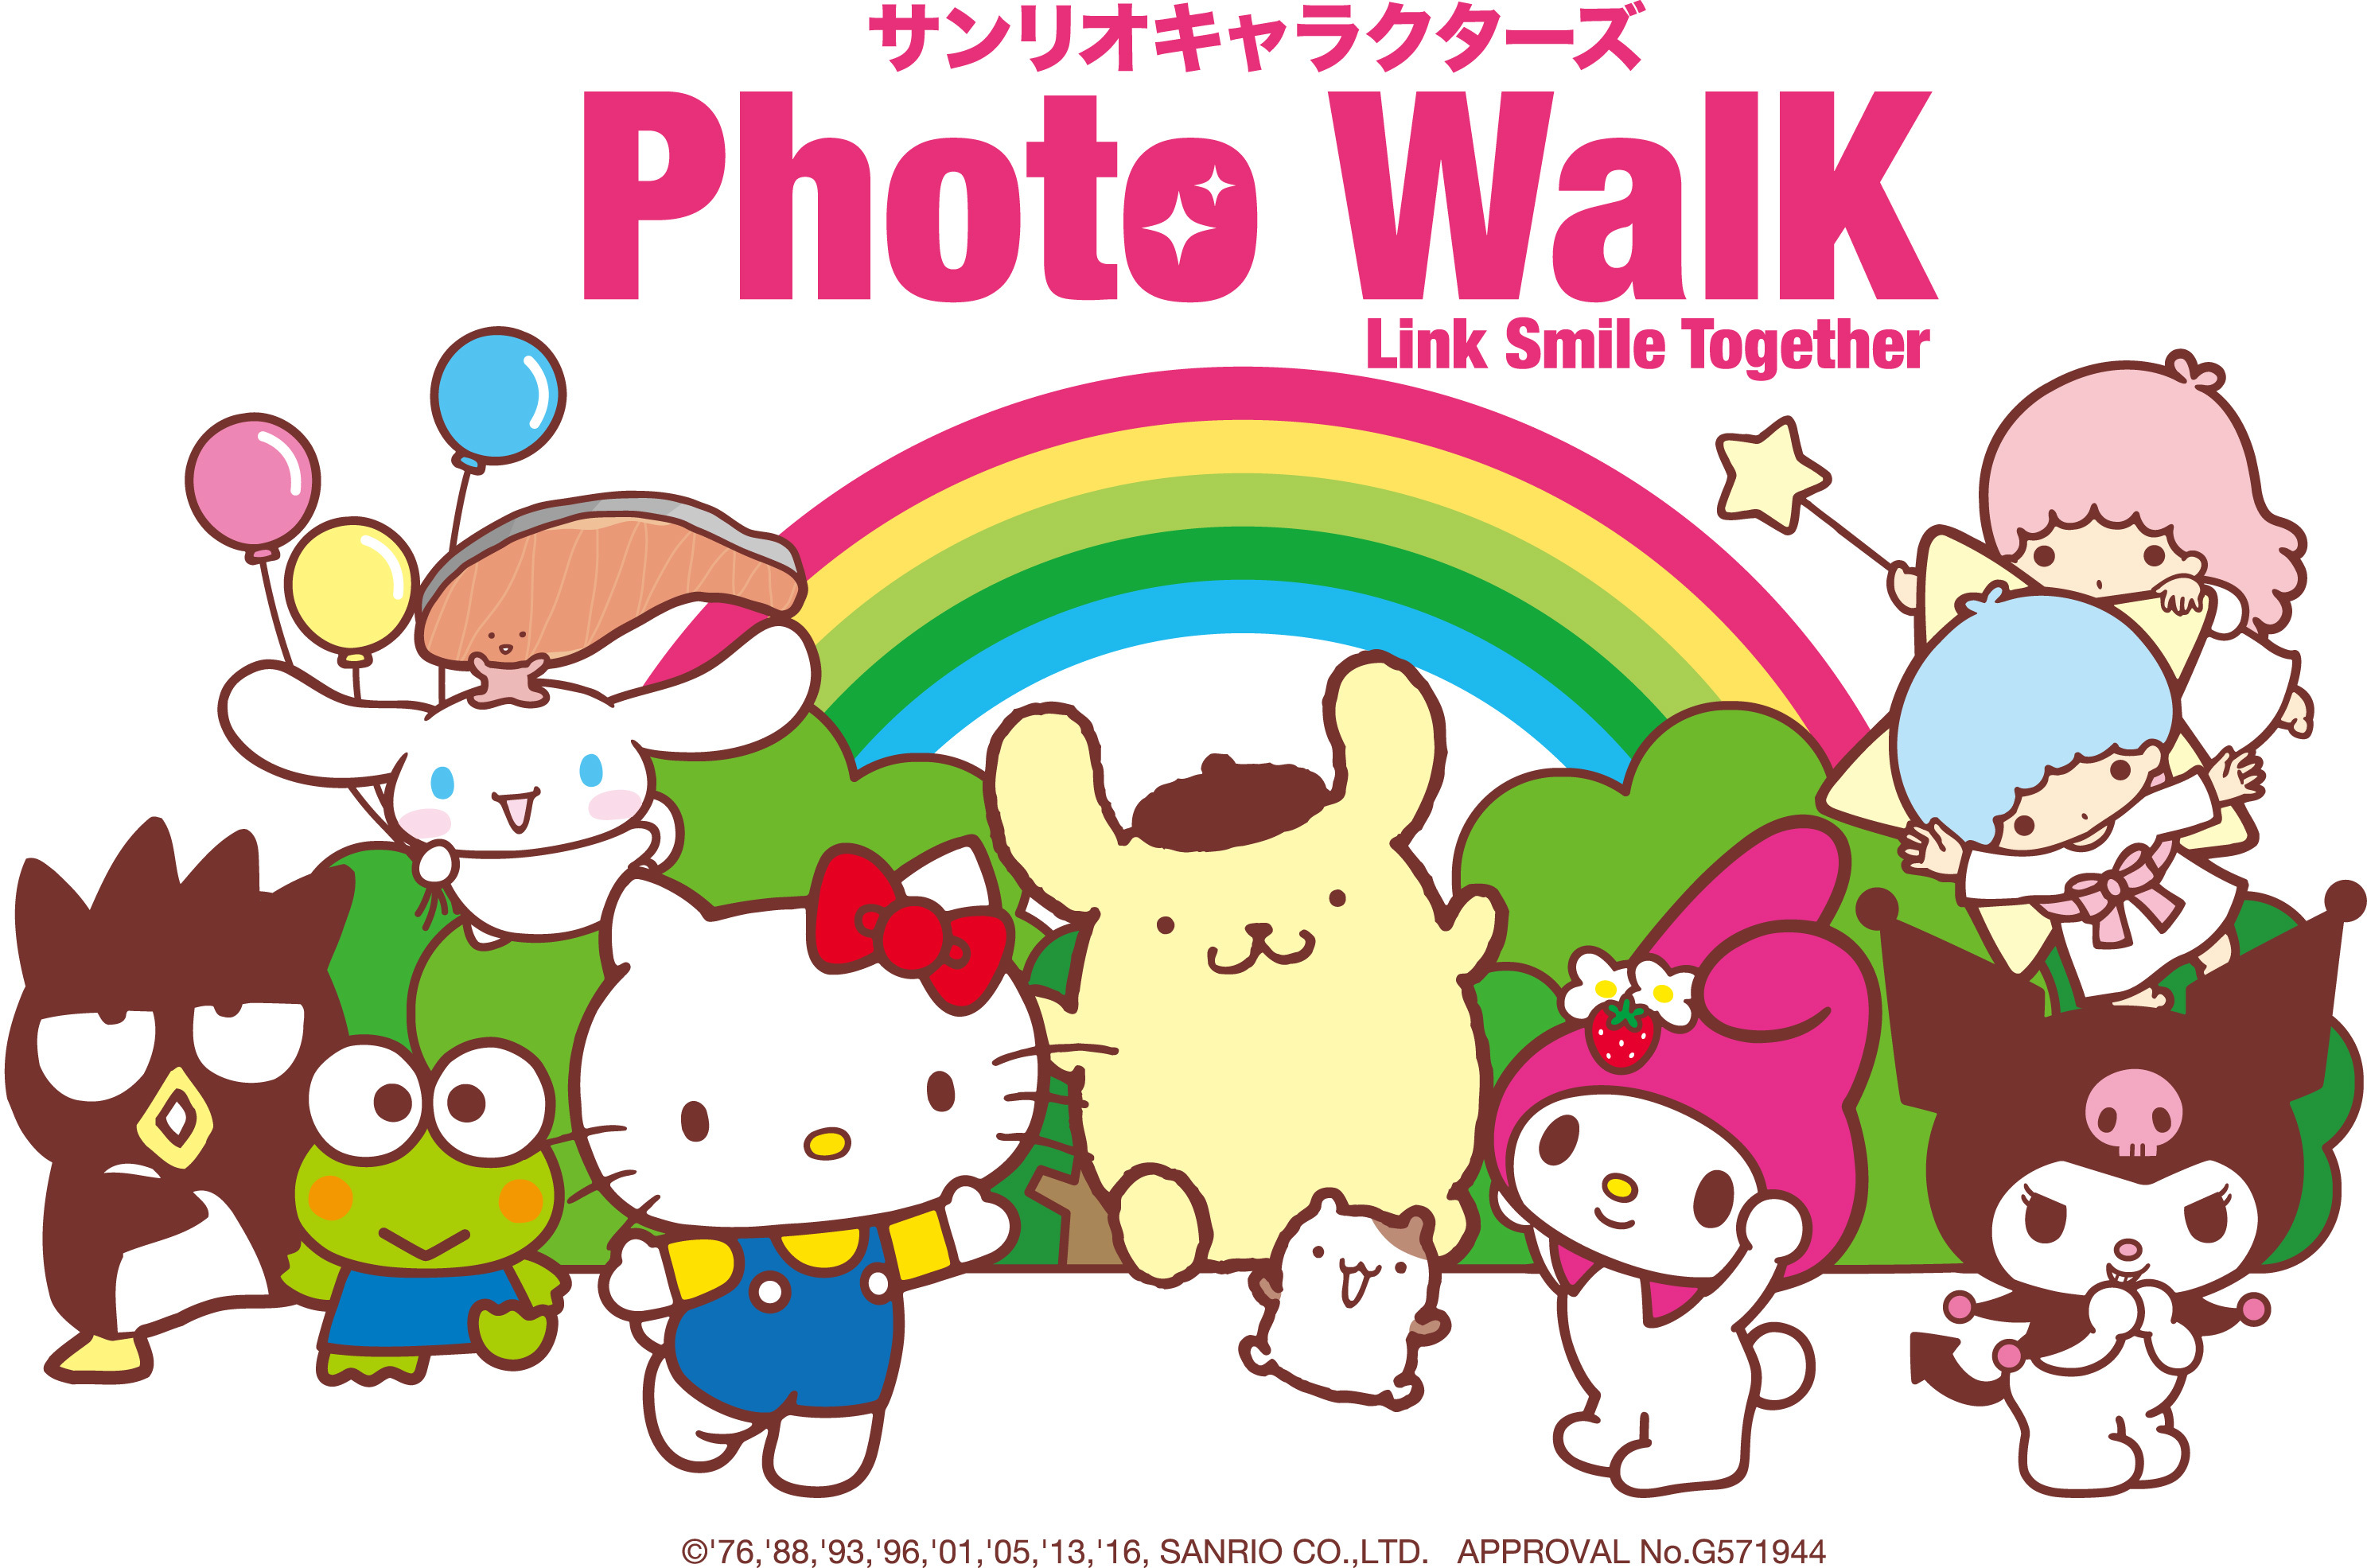 サンリオキャラクターズphoto Walk 開催 人気サンリオキャラクター